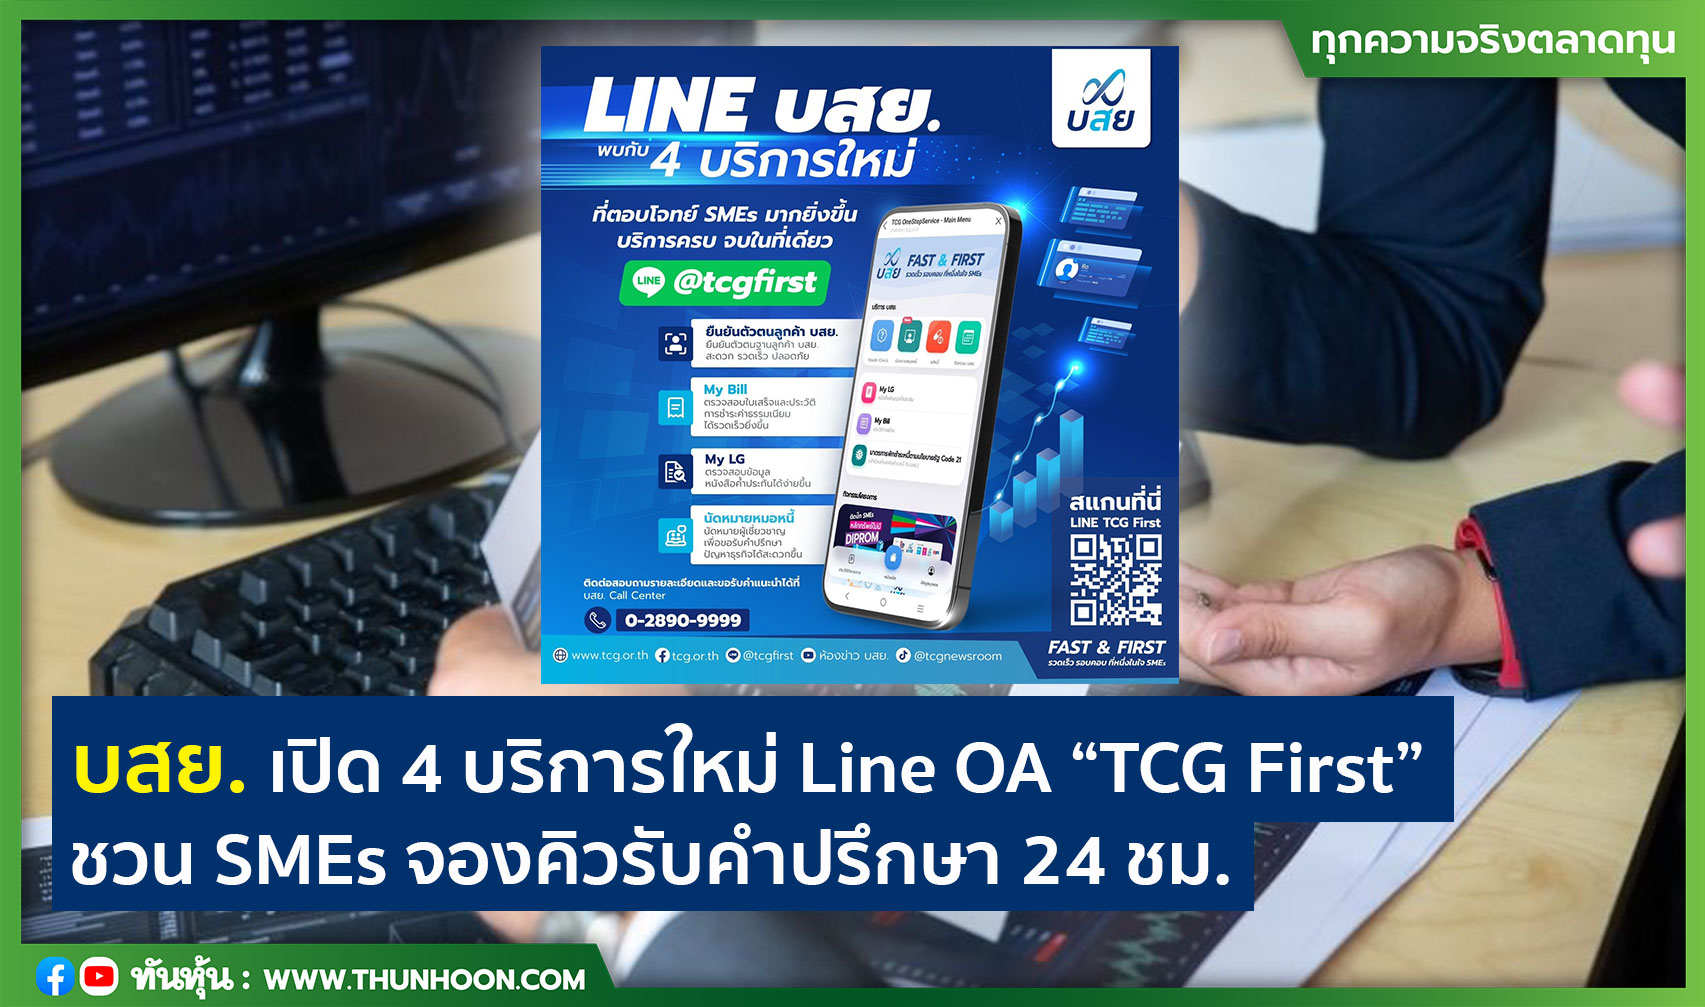 บสย. เปิด 4 บริการใหม่ Line OA “TCG First” ชวน SMEs จองคิวรับคำปรึกษา 24 ชม.